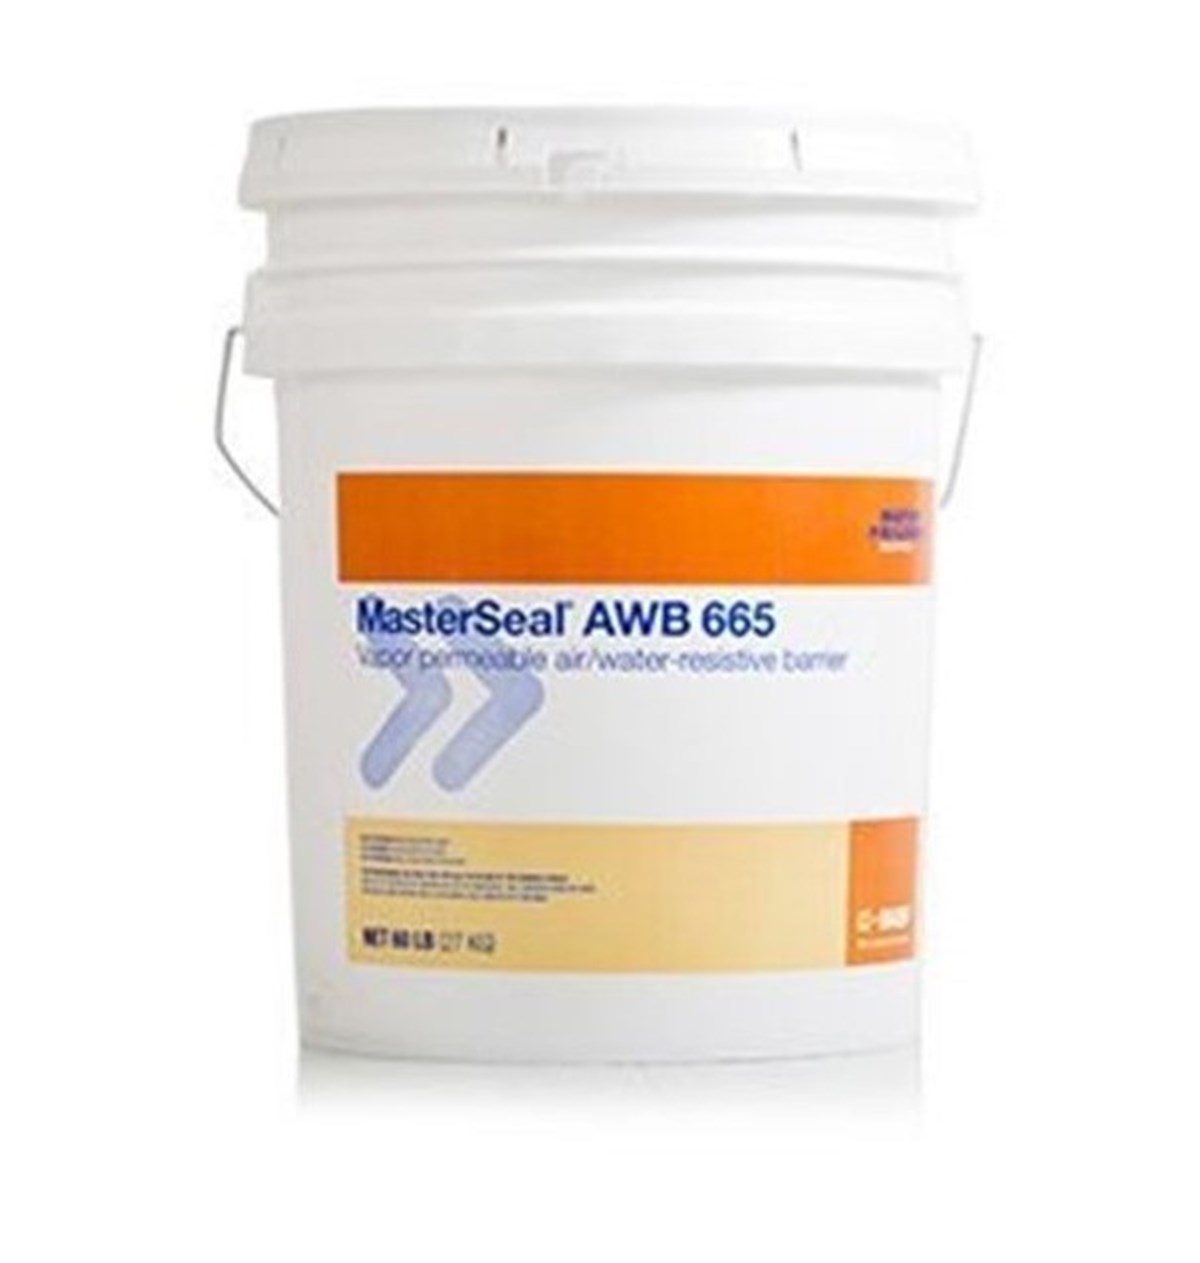 Masterseal 665 Bitüm-Kauçuk Esaslı, Tek Bileşenli Su Yalıtım Malzemesi 30 kg